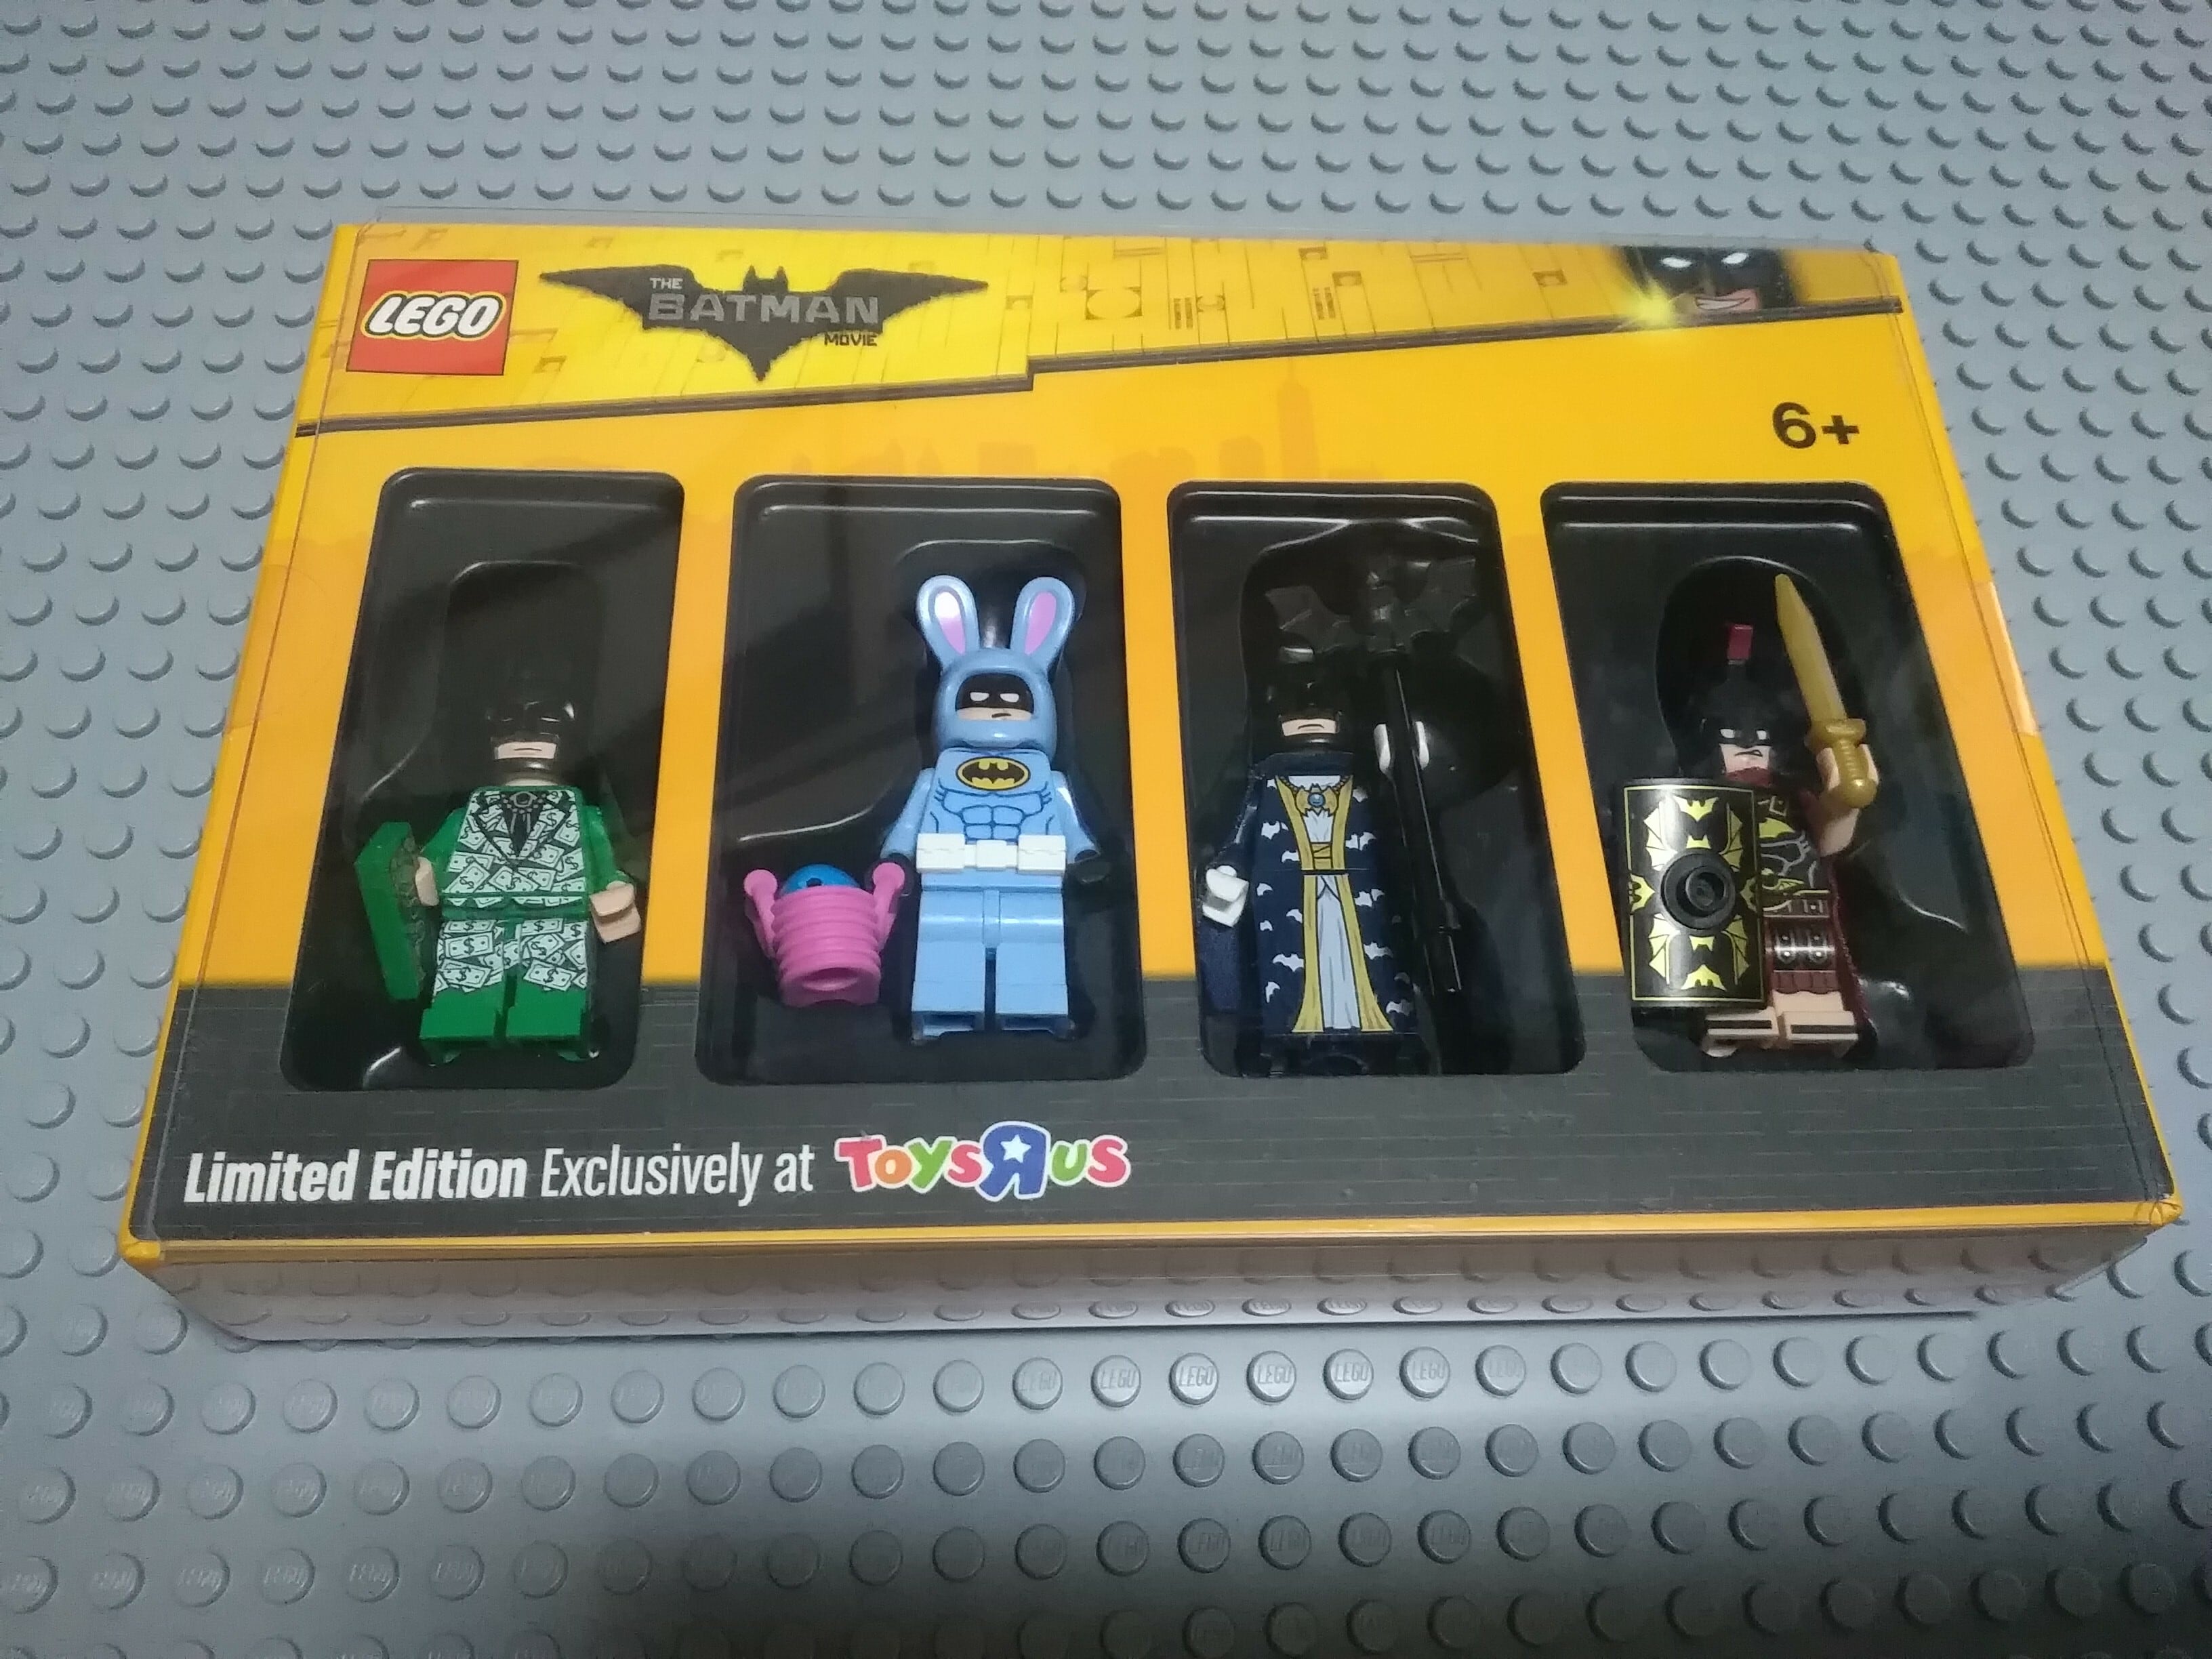 LEGO 送料無料 新品 トイザらス限定品  レゴバットマン